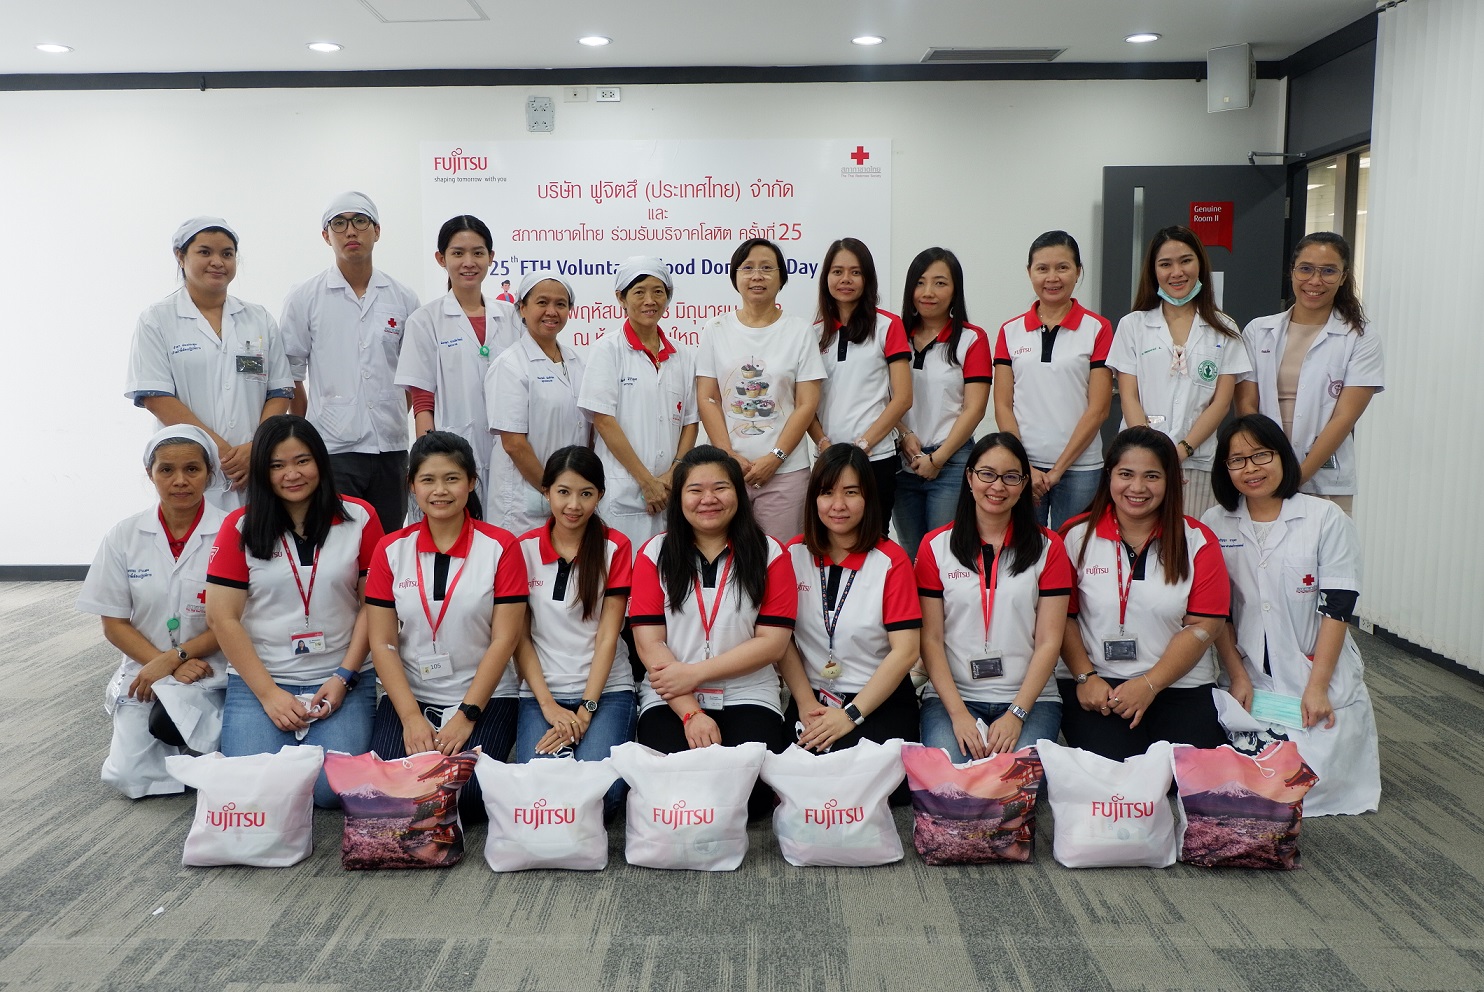 ฟูจิตสึรวมพลังจัดกิจกรรมเพื่อสังคม The 25th FTH Voluntary Blood Donation ร่วมบริจาคโลหิตให้กับสภากาชาดไทย ครั้งที่